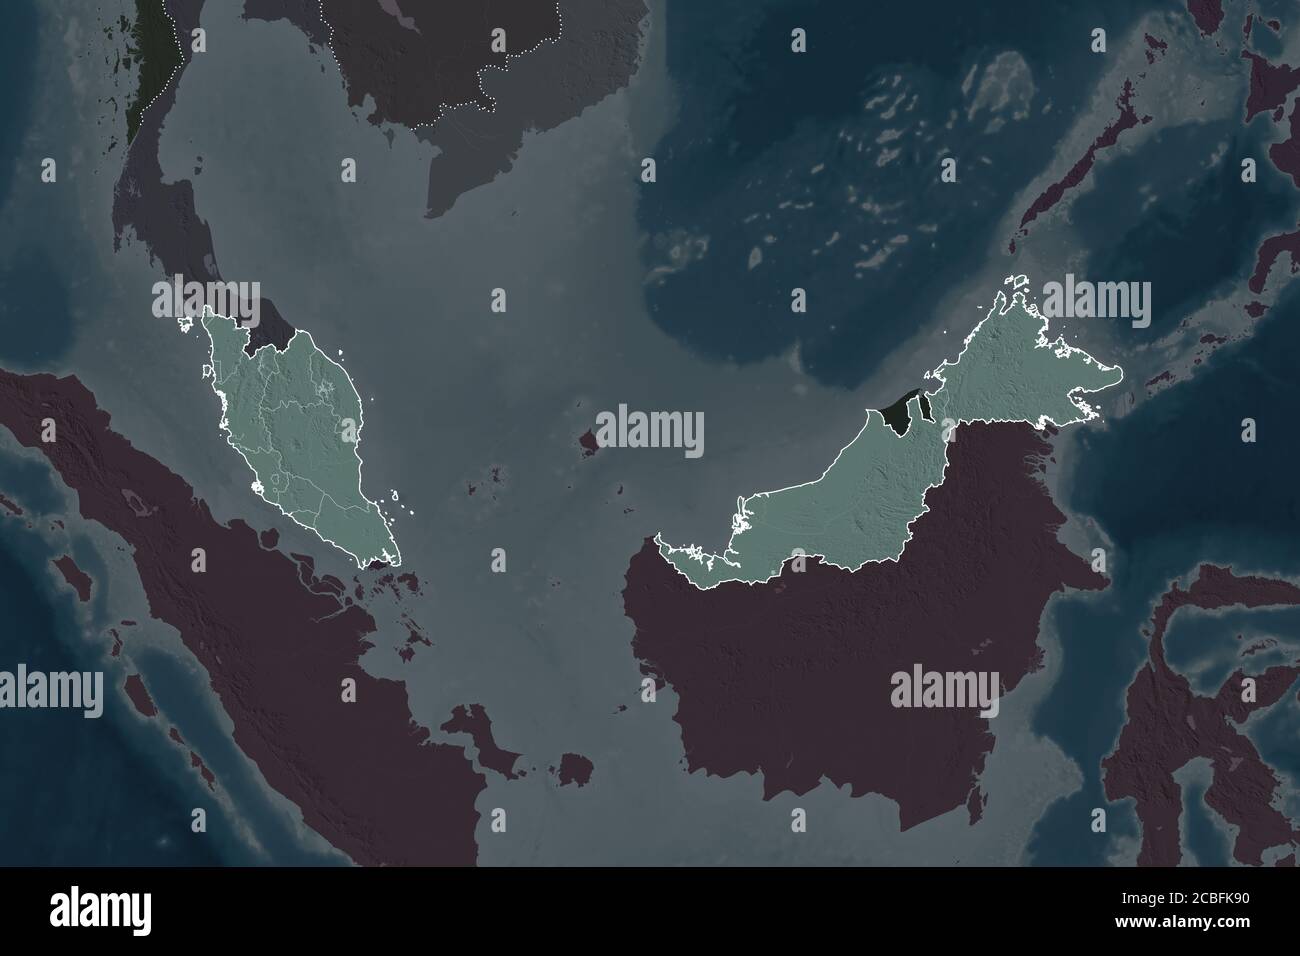 Forma De Malasia Separada Por La Desaturación De Las Zonas Vecinas Bordes Mapa De Altura En 1941